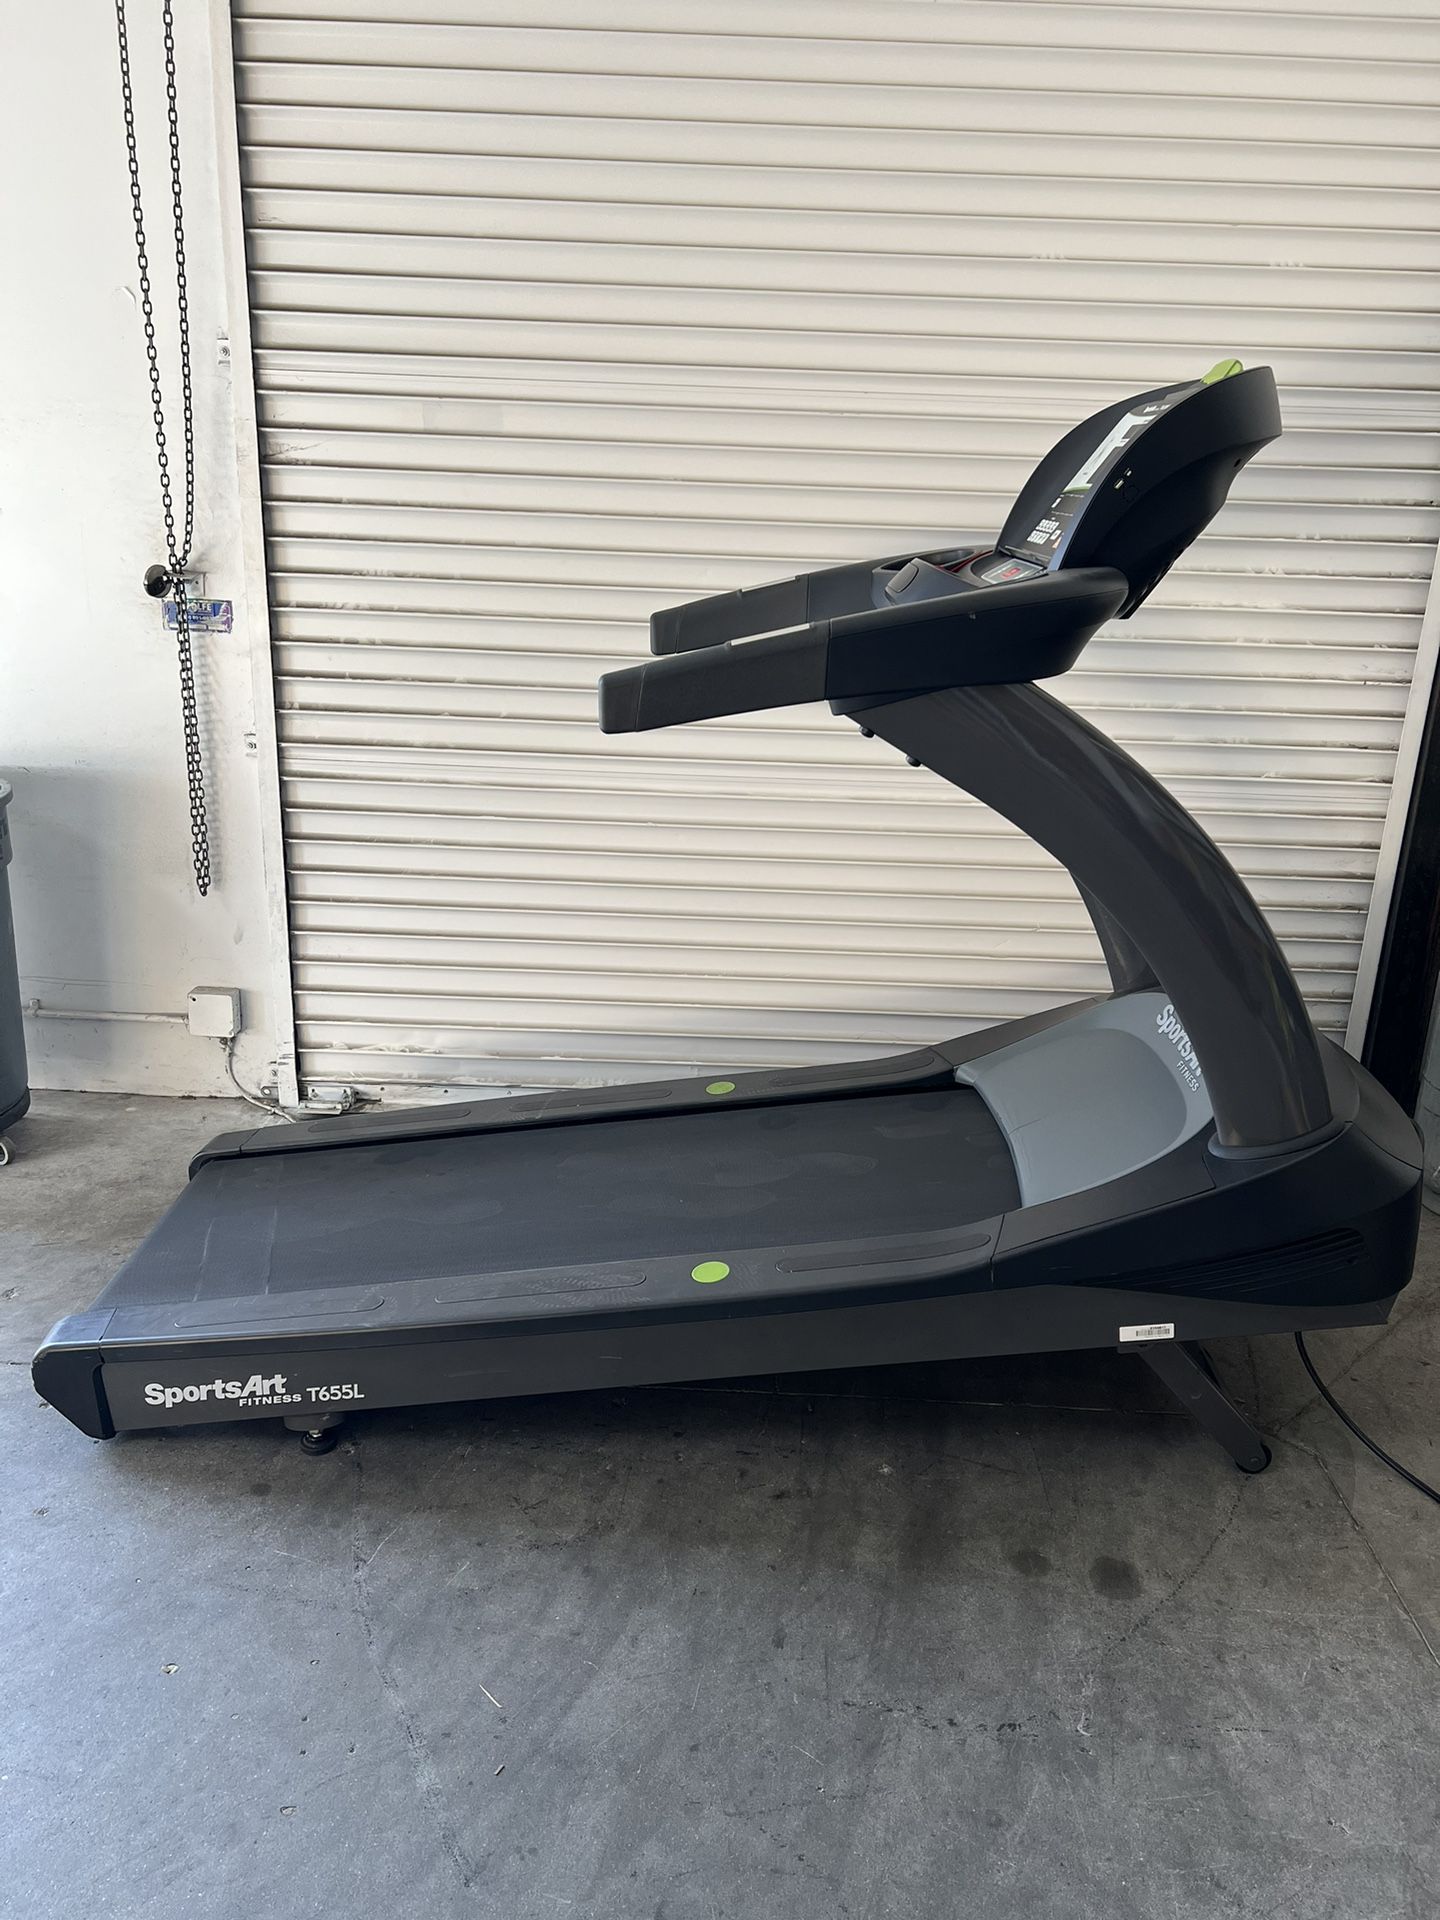 SportsArt Commercial Grade Treadmill T655L